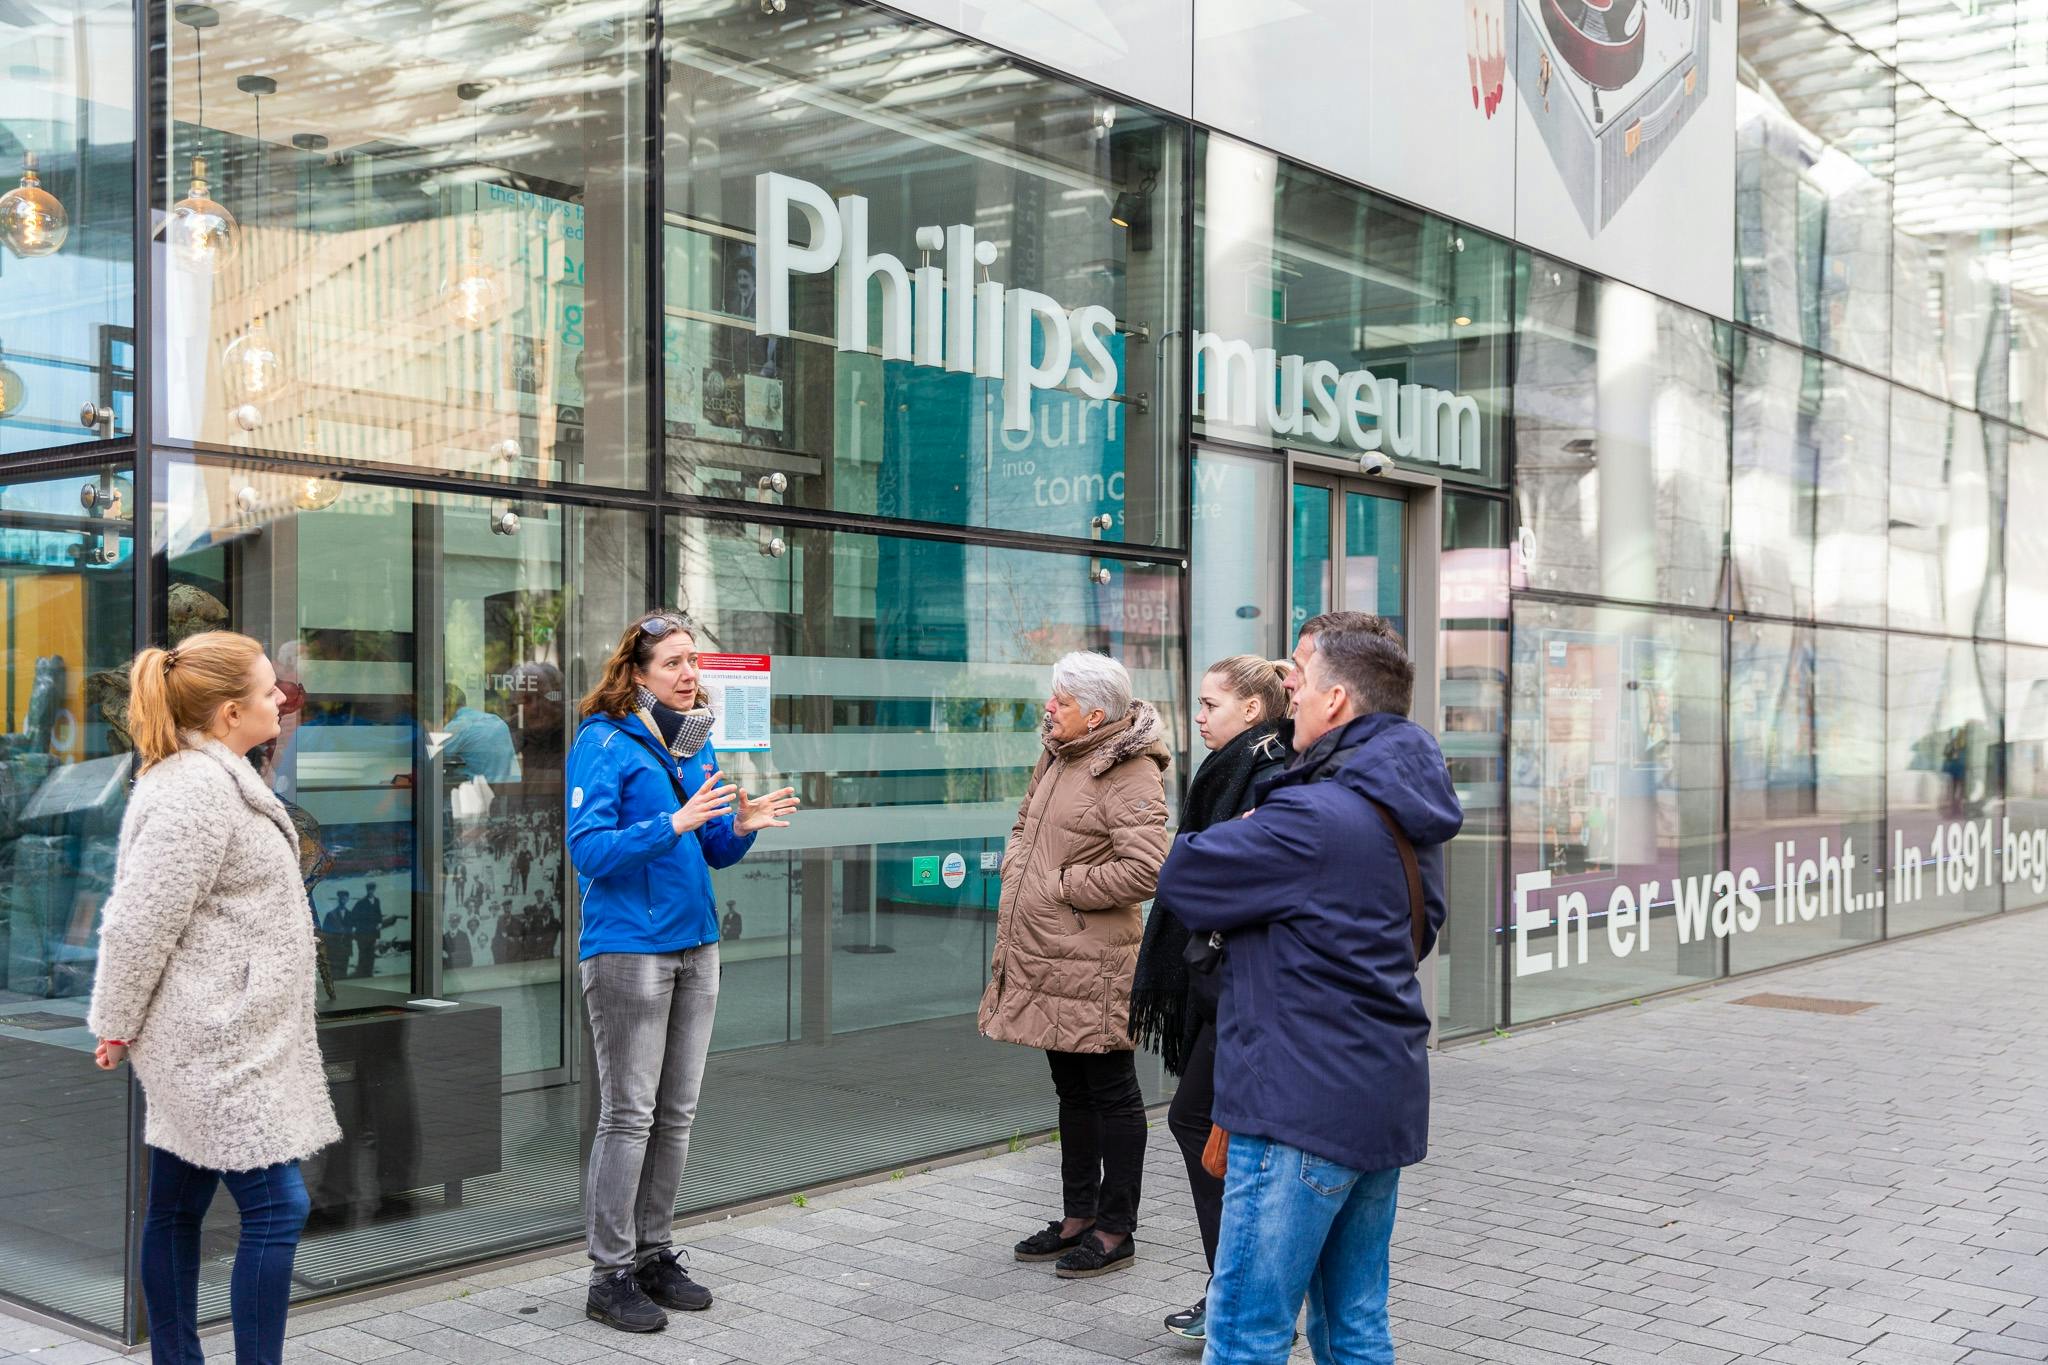 Prywatna wycieczka piesza po hotspotach w Eindhoven